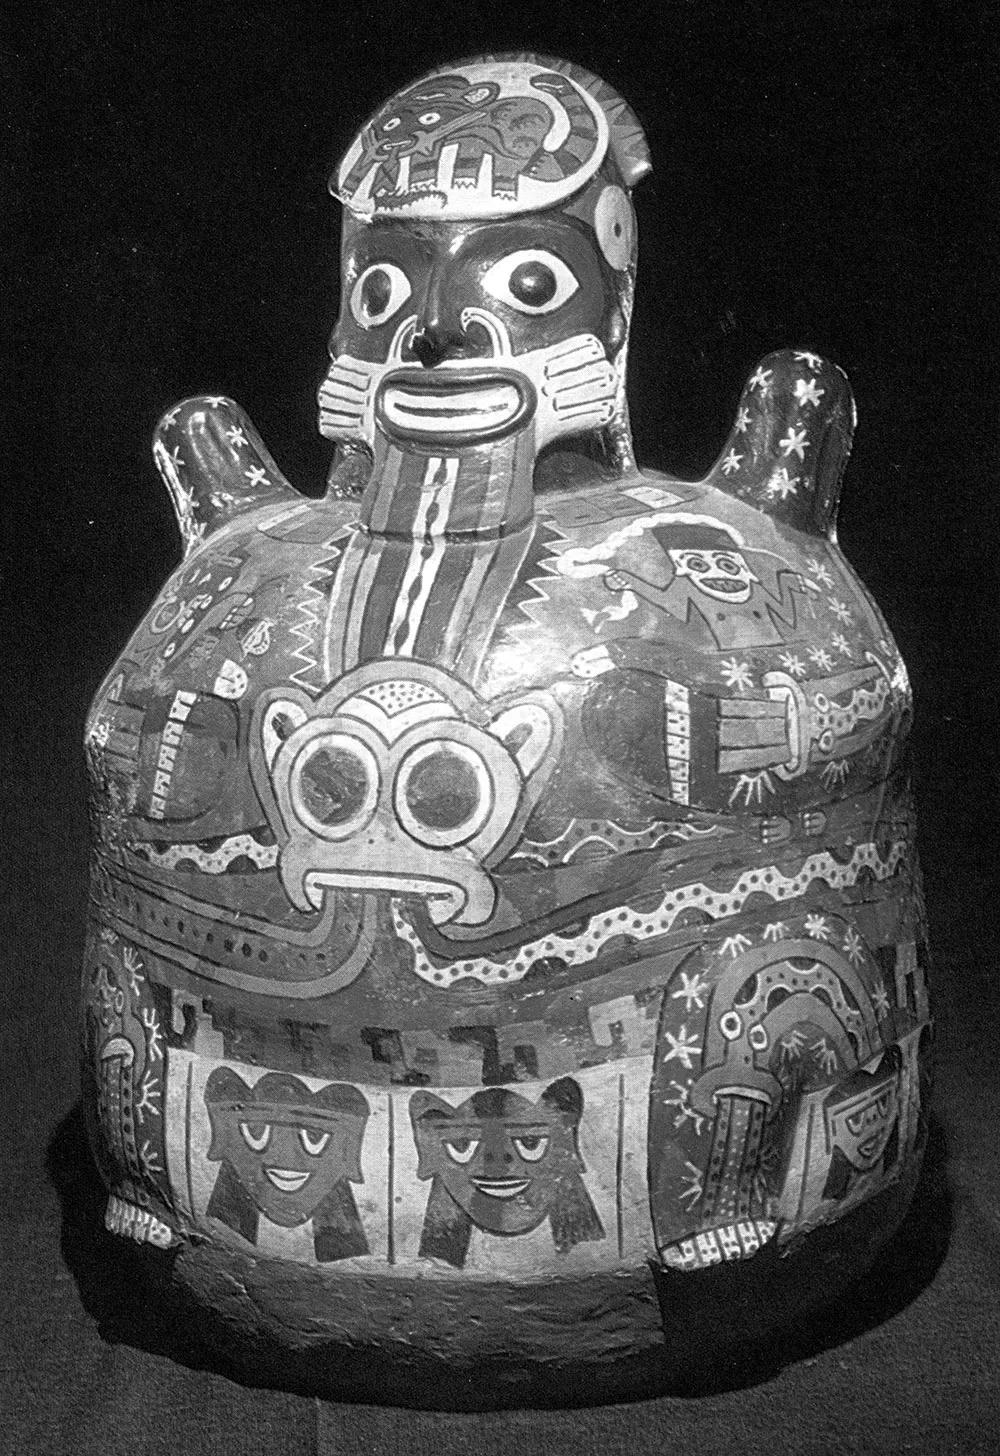 Ídolo o momia representada en una cerámica de la cultura Nazca, en las que les sobresalen cactus de San Pedro. Altura: 40 cm. Perú, siglos I-V d.C